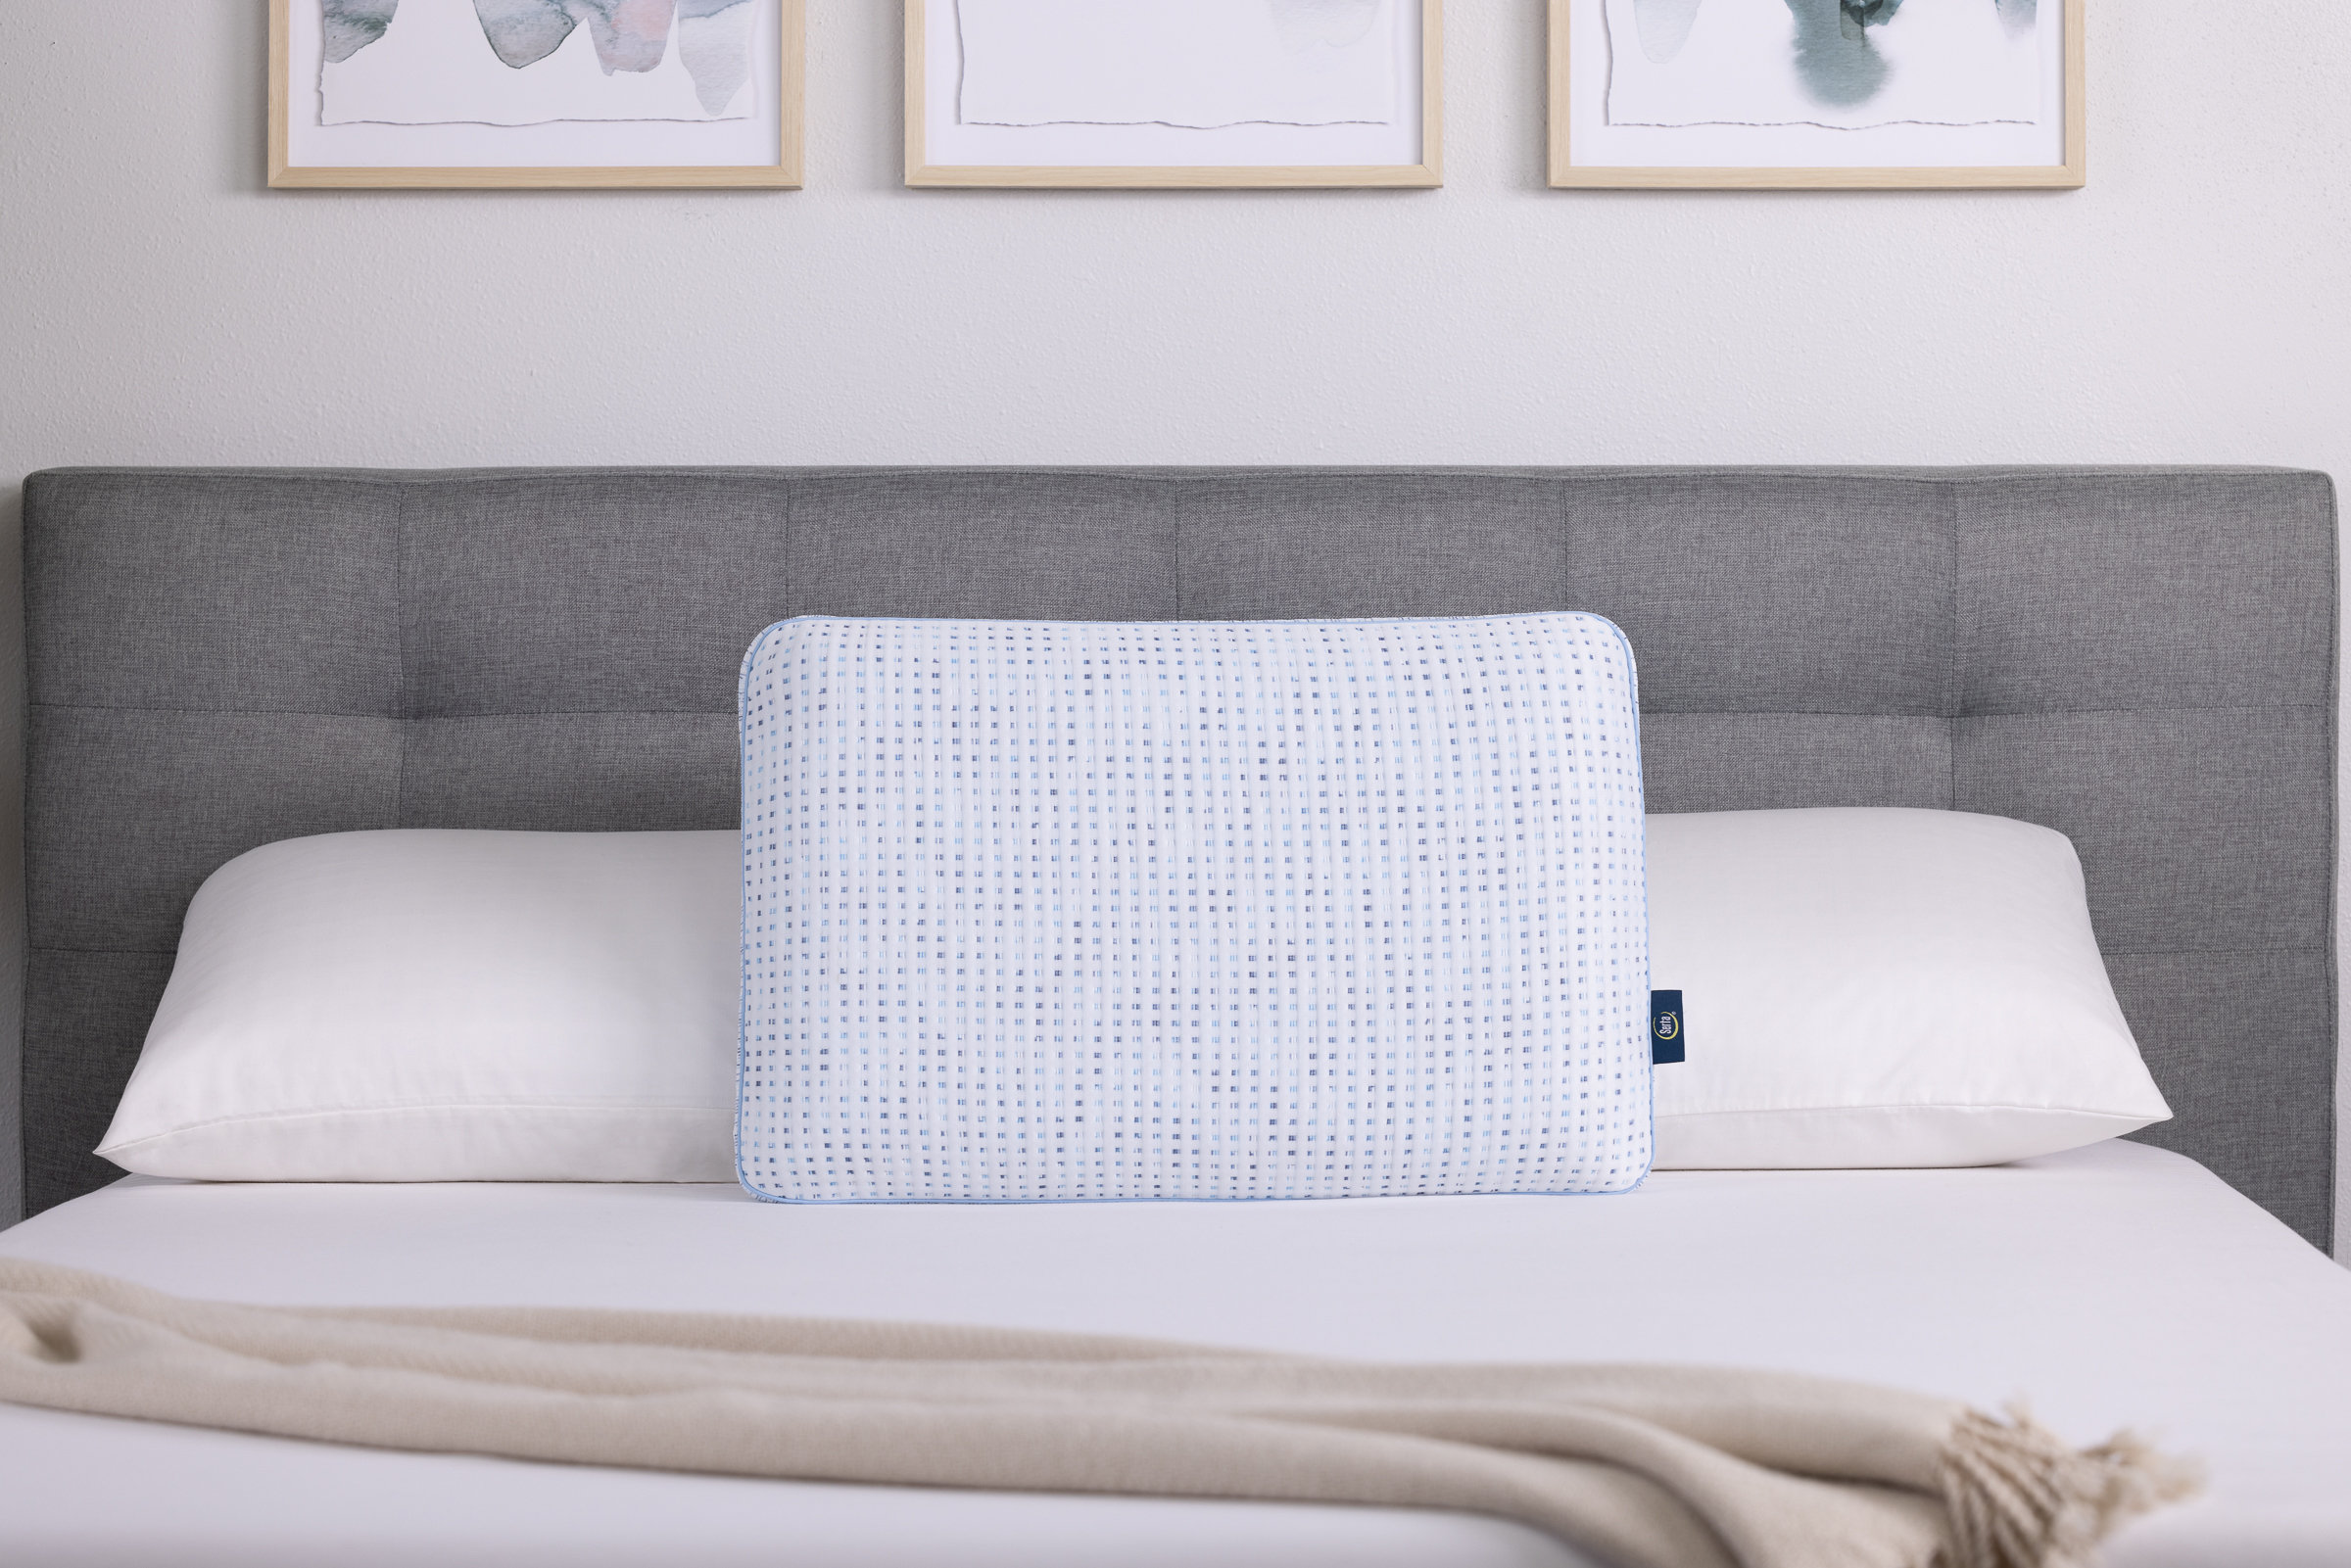 Serta Perfect Sleeper - Cooling Foam Pillows, 2-Pack